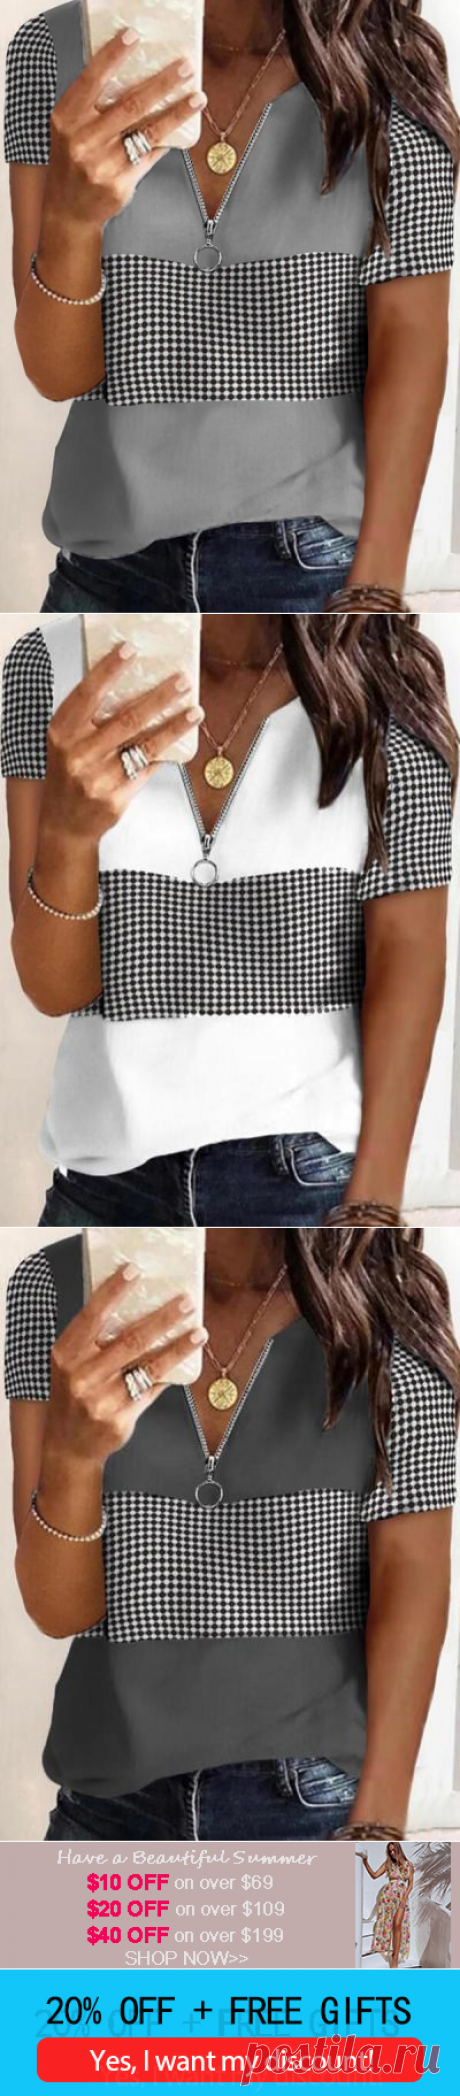 $ 23.99 - Women stylish short sleeve zipper T-shirts - www.clothingi.com